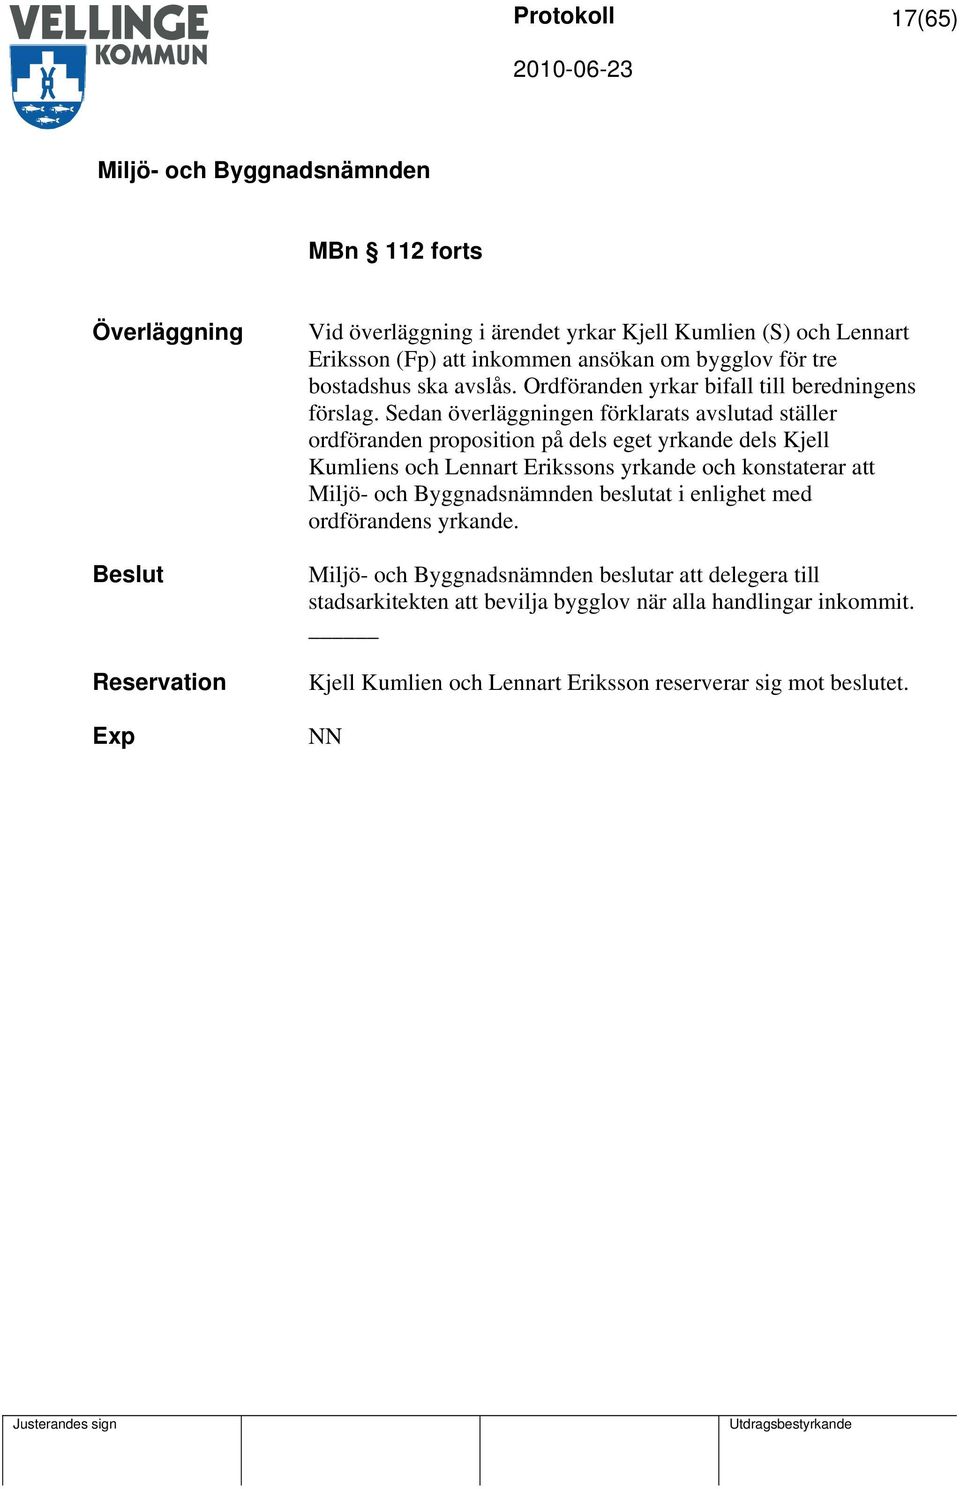 Sedan överläggningen förklarats avslutad ställer ordföranden proposition på dels eget yrkande dels Kjell Kumliens och Lennart Erikssons yrkande och